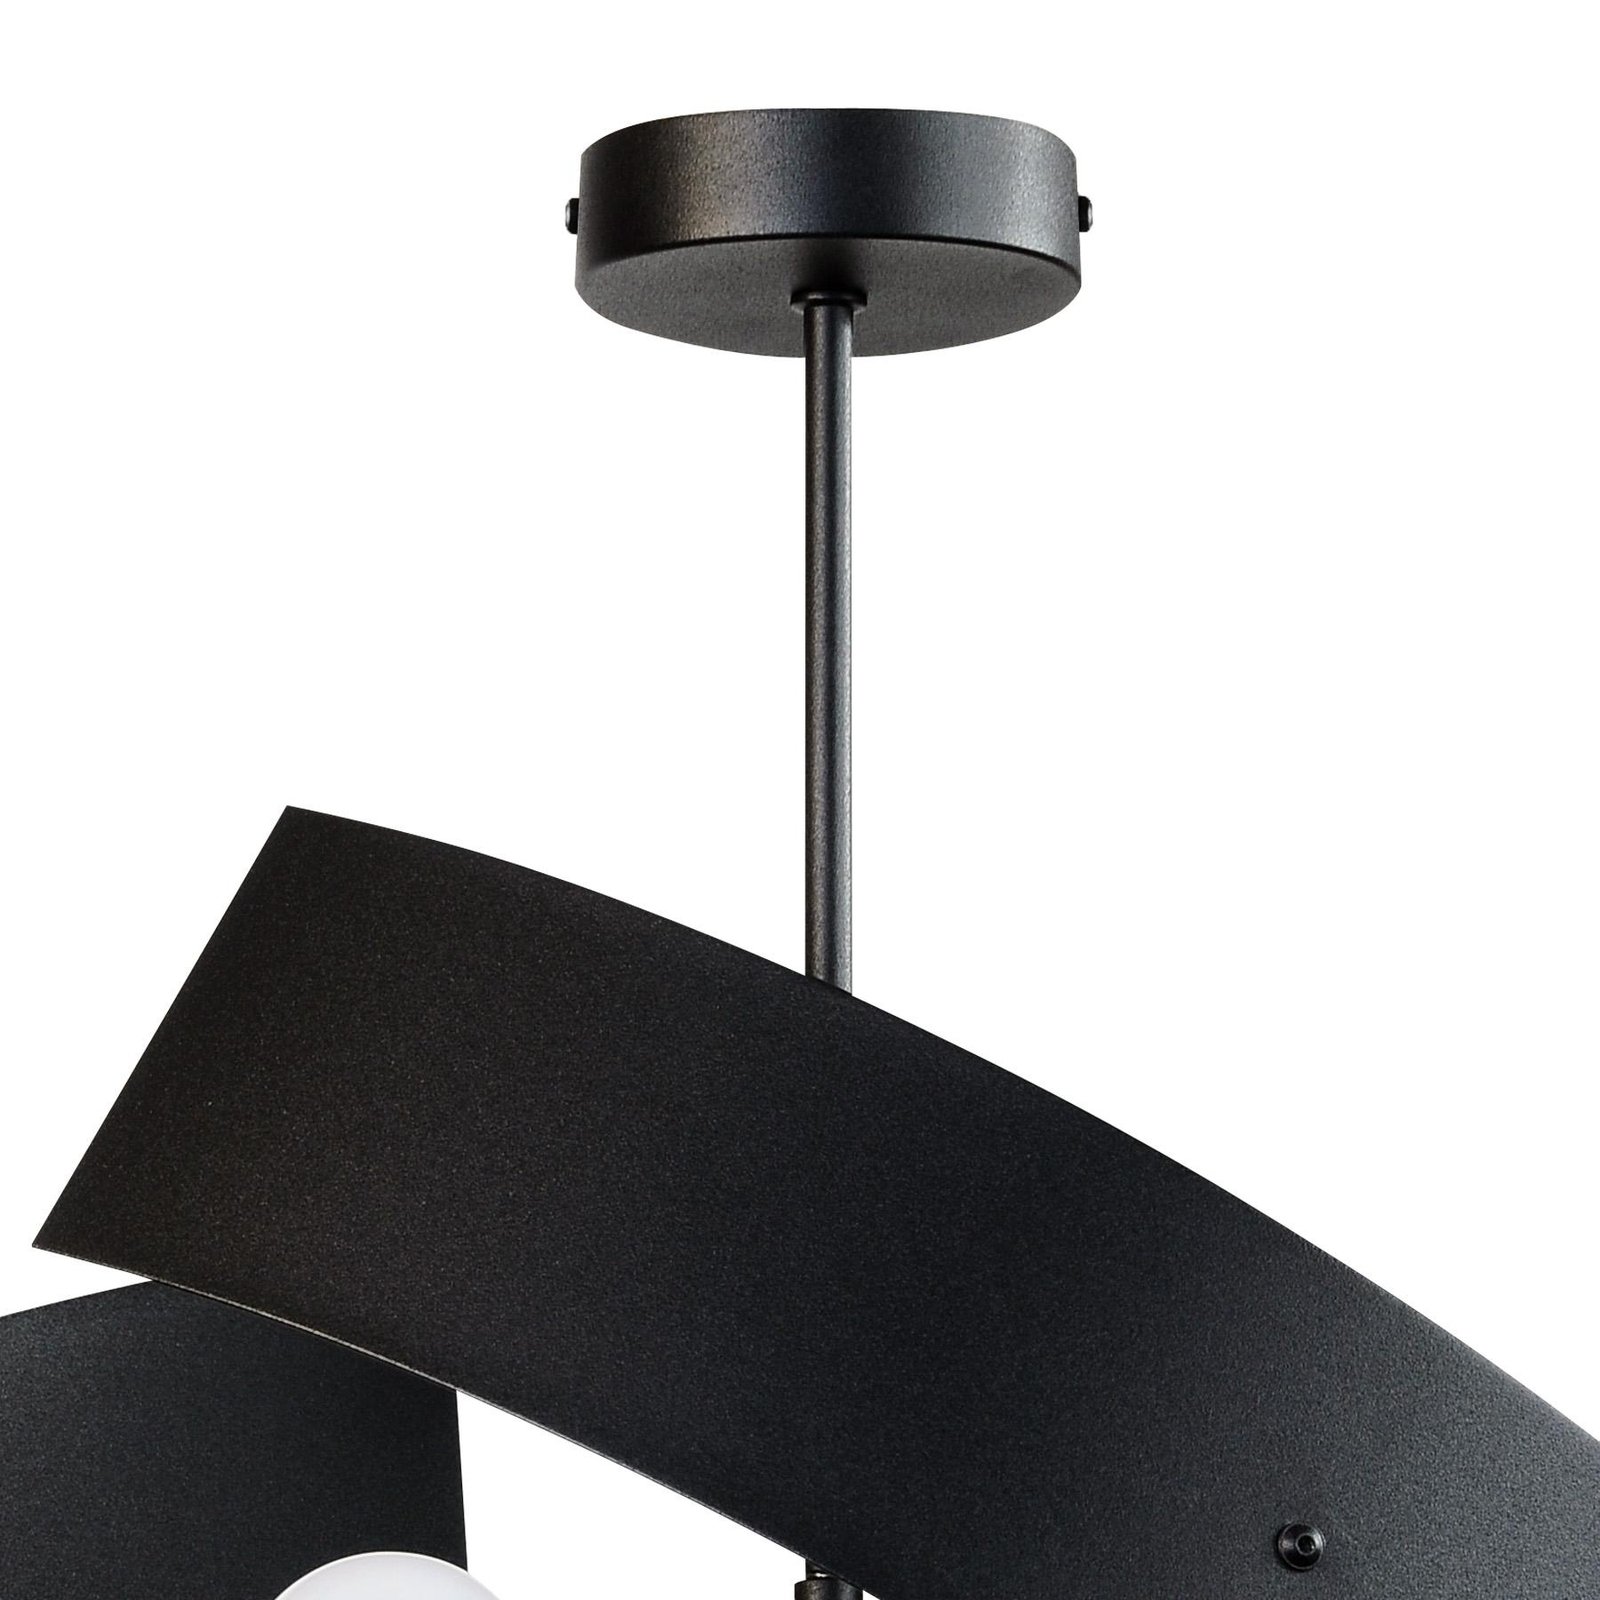 Moira taklampe, svart, Ø 47 cm, 3 lys, 3 lys